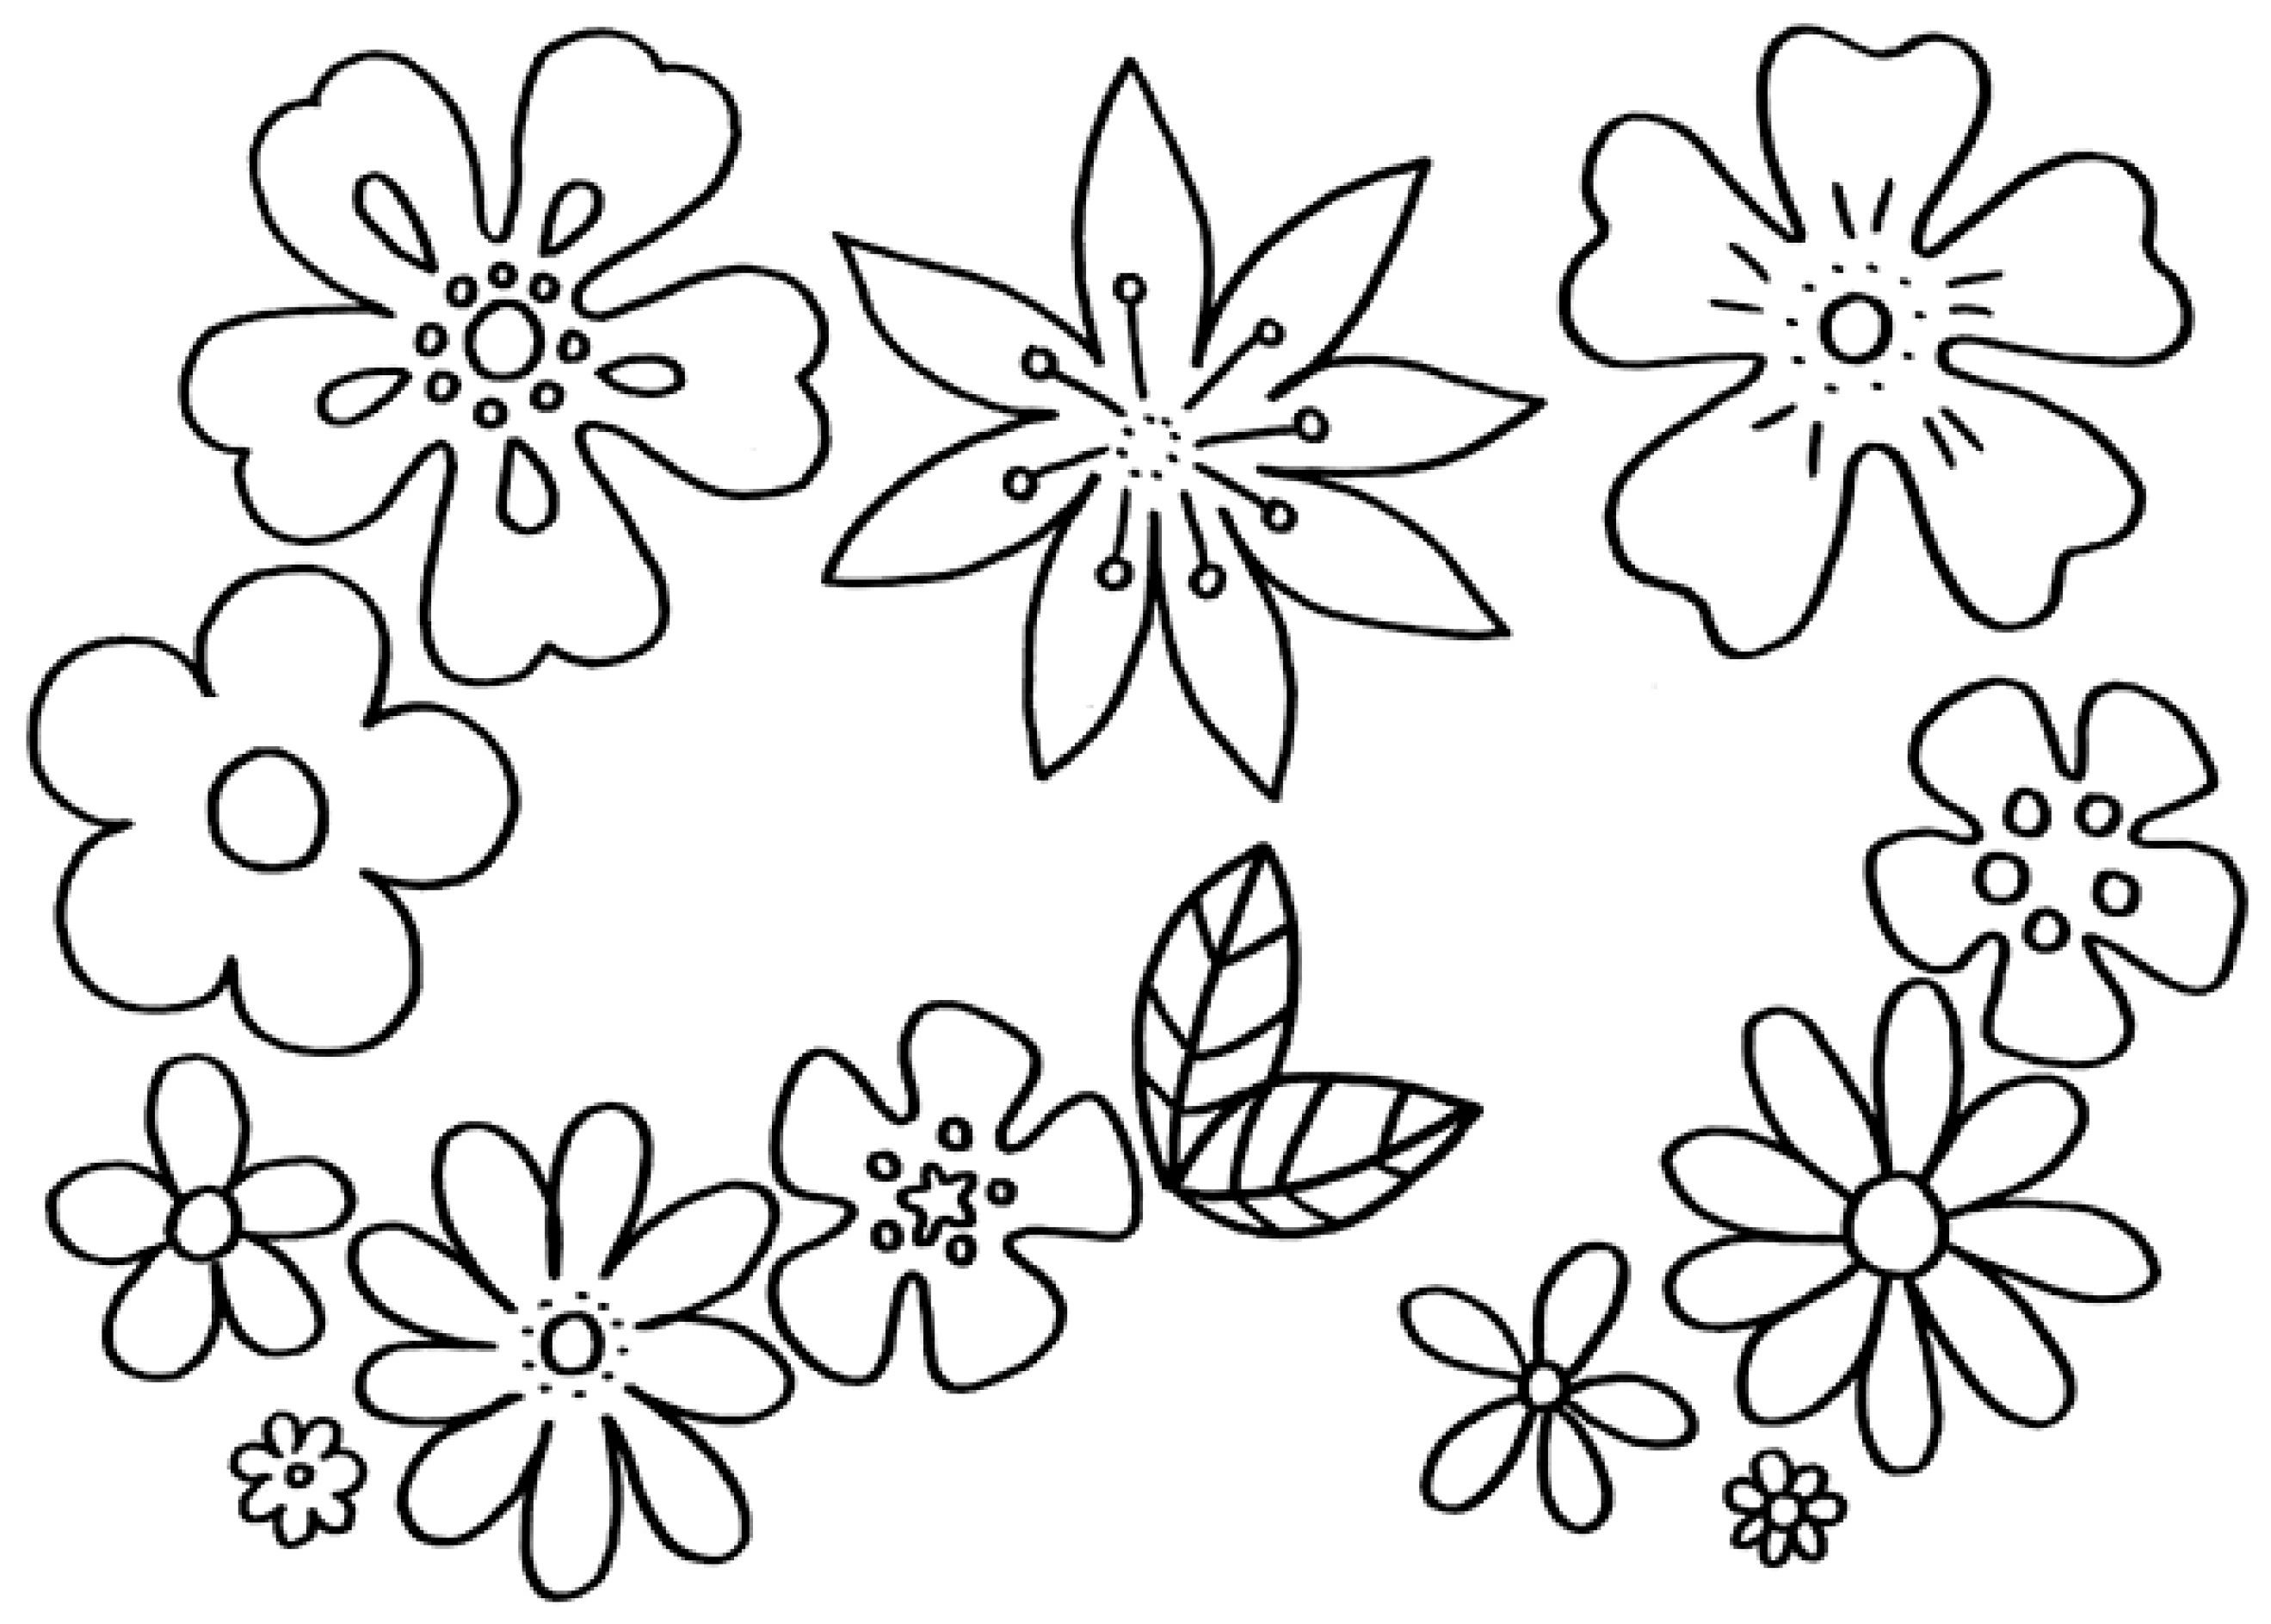 Ausmalbilder Mandala Blumen
 Malvorlagen Blumen kostenlose Ausmalbilder